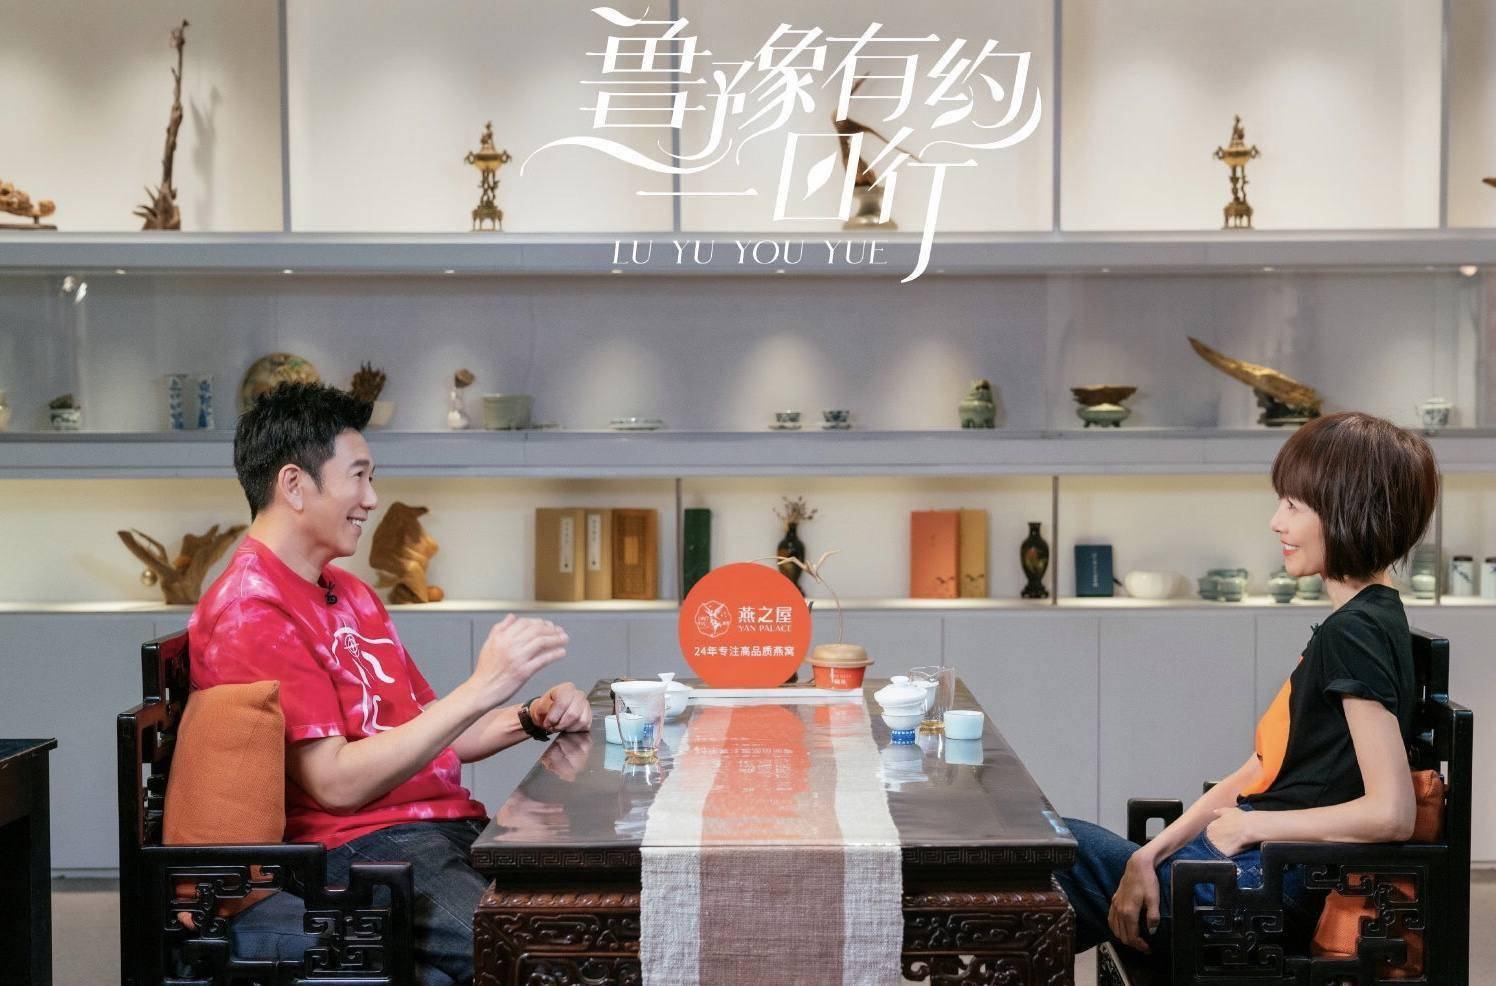 知名港星温兆伦自曝参加《披荆斩棘2》原因,承认未来不排除与TVB合作